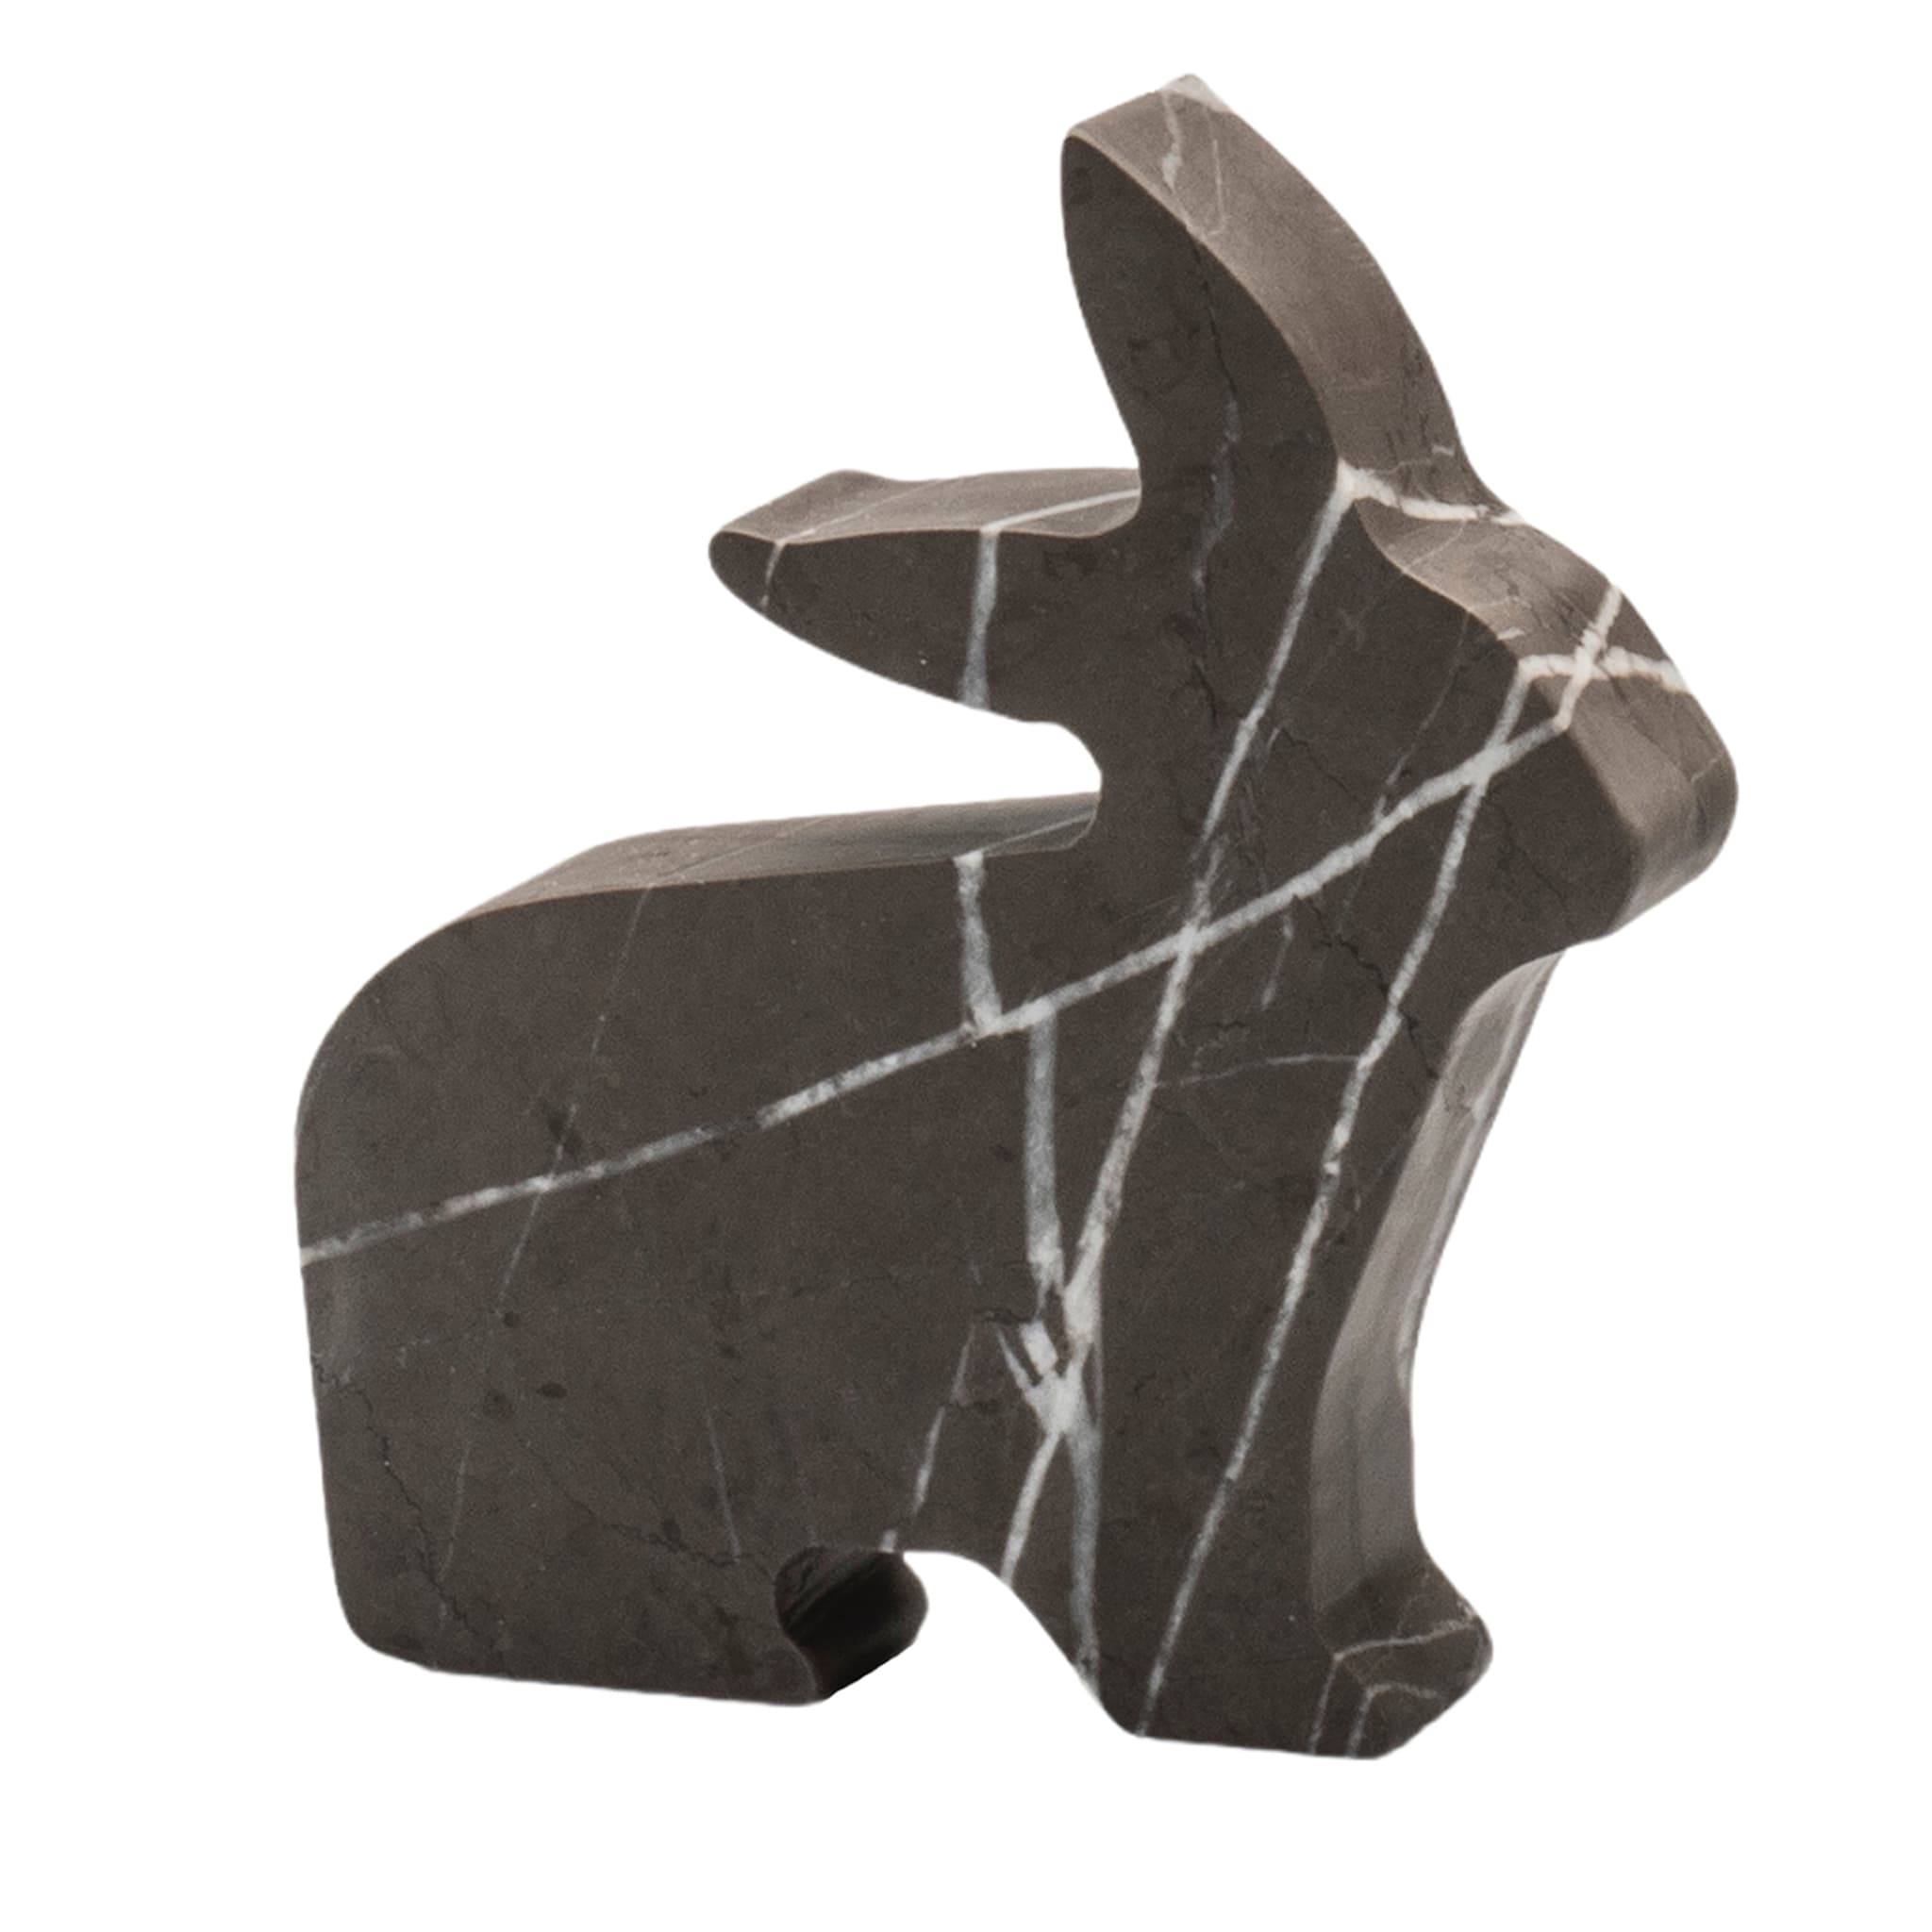 Petite statuette grise de Coniglio par Alessandra Grasso - Vue principale